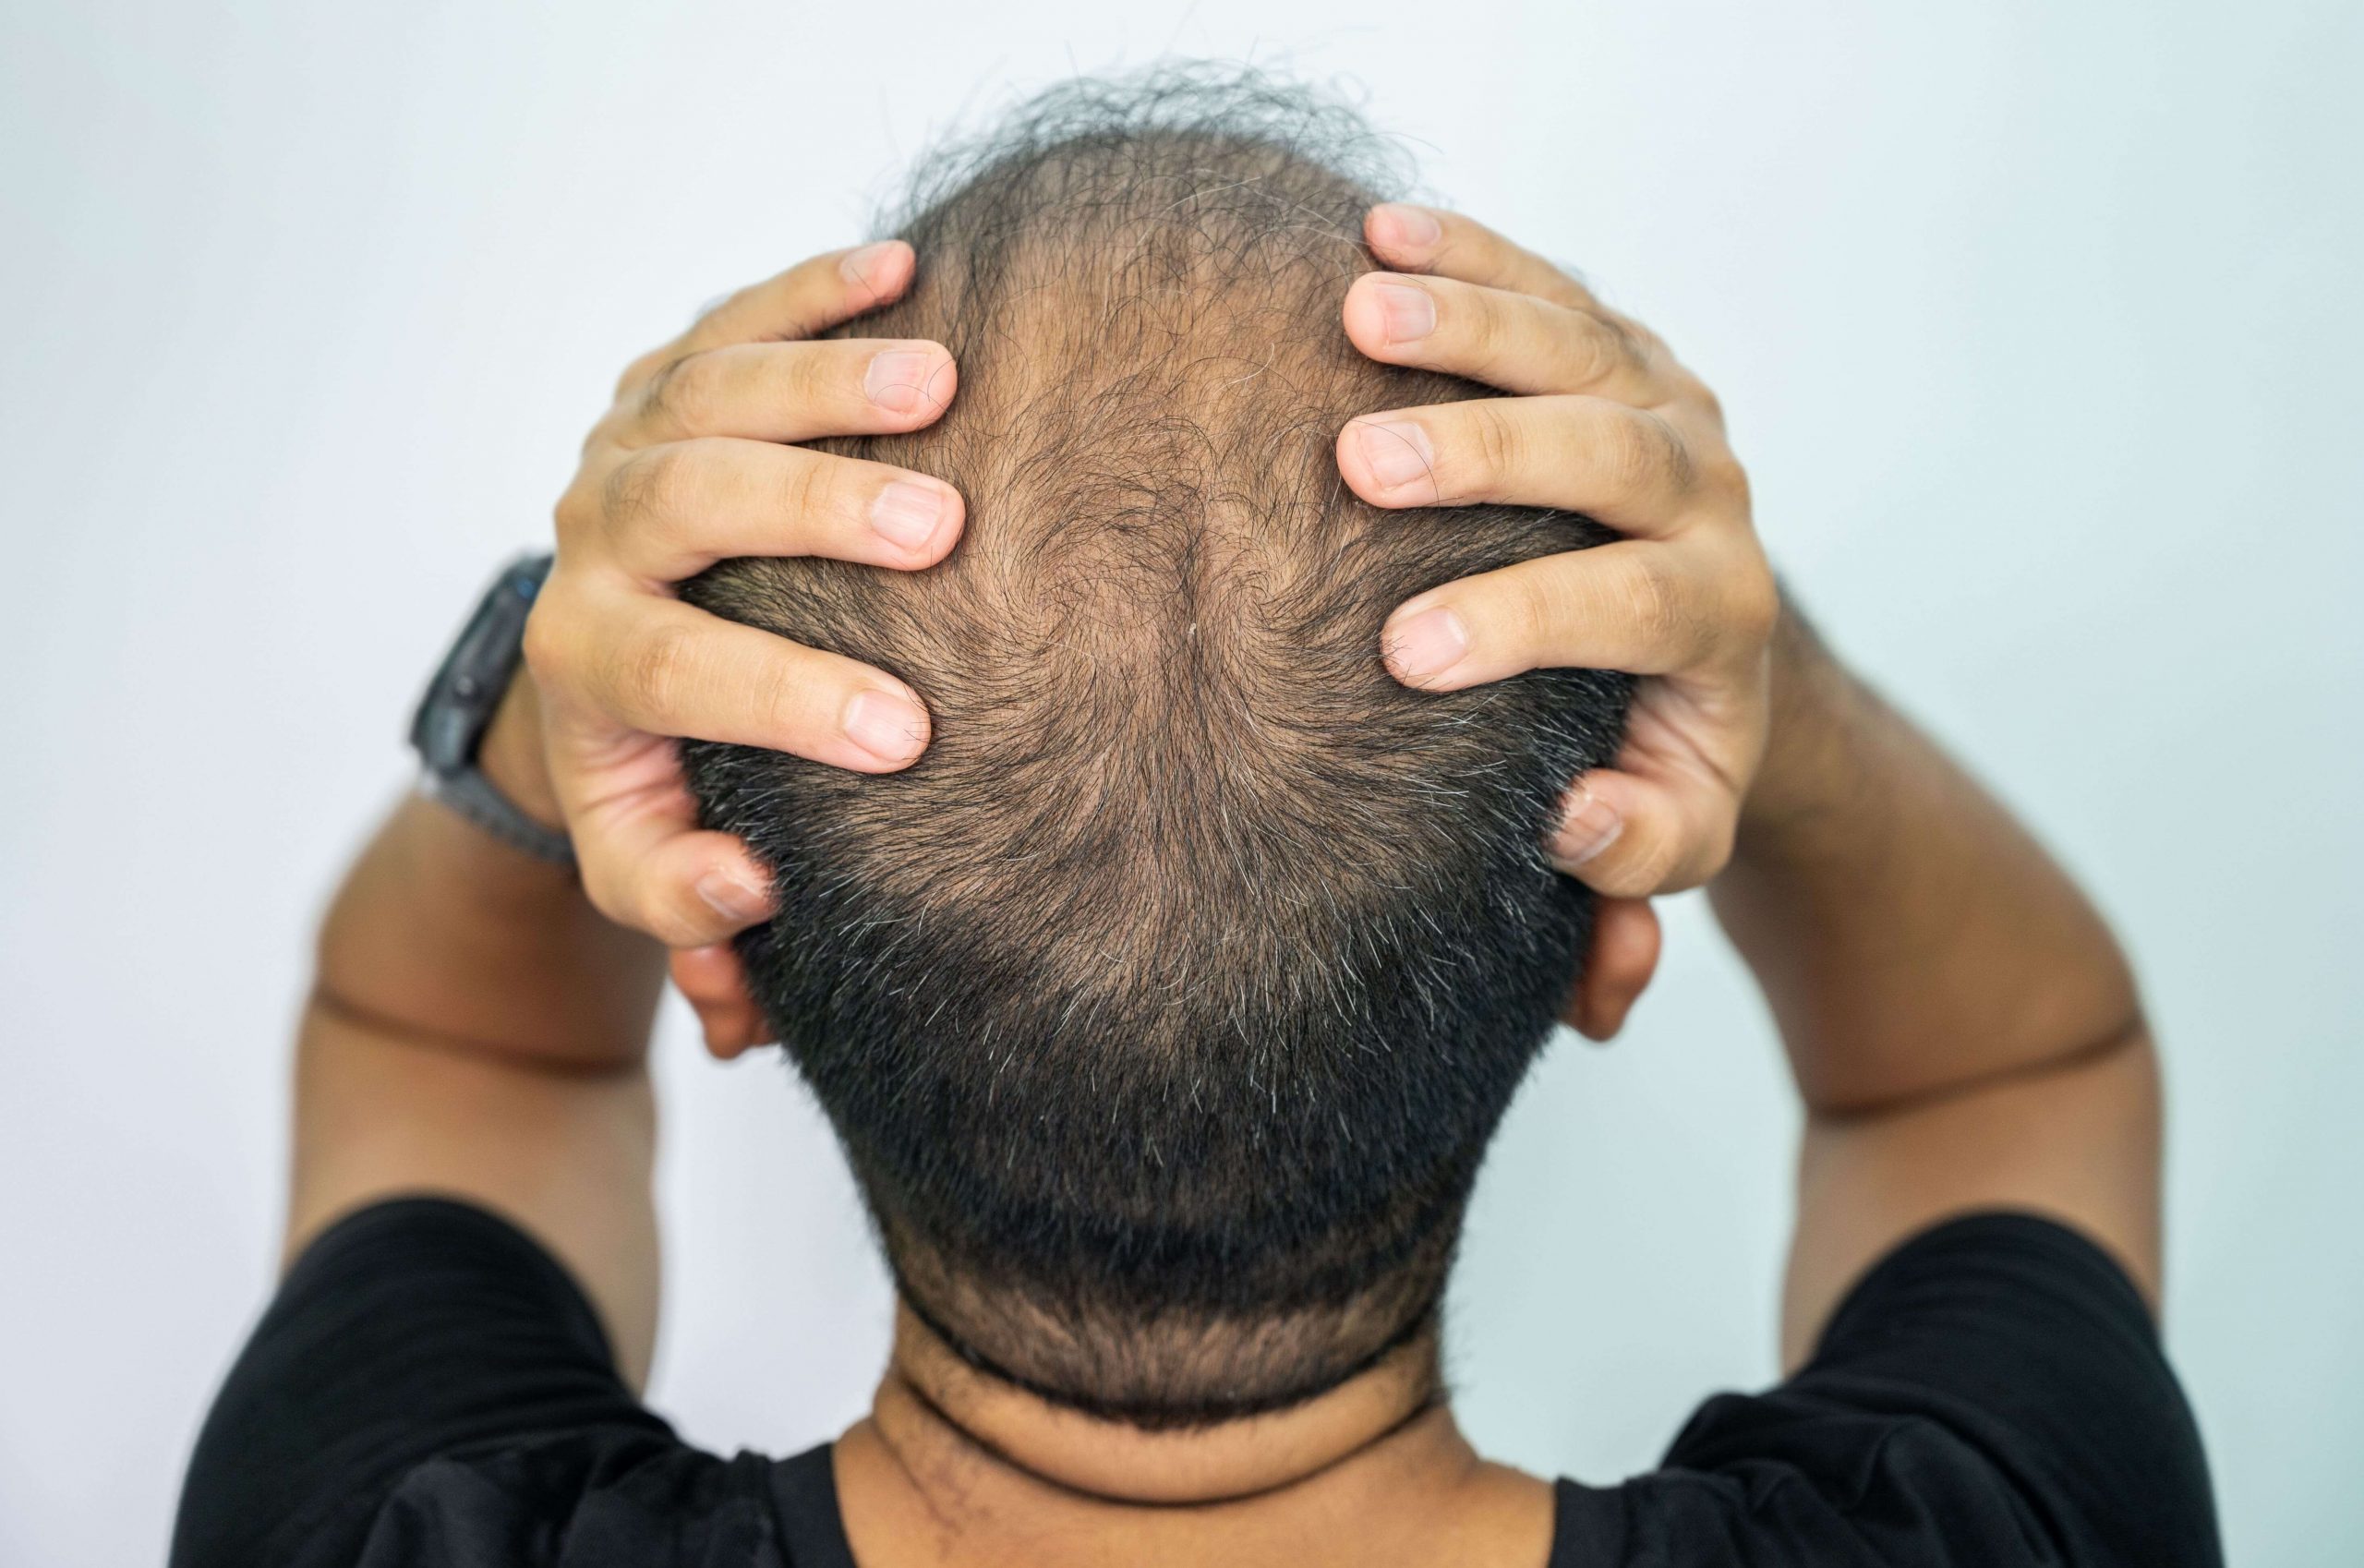 Les différents types de calvitie liés à la perte de cheveux